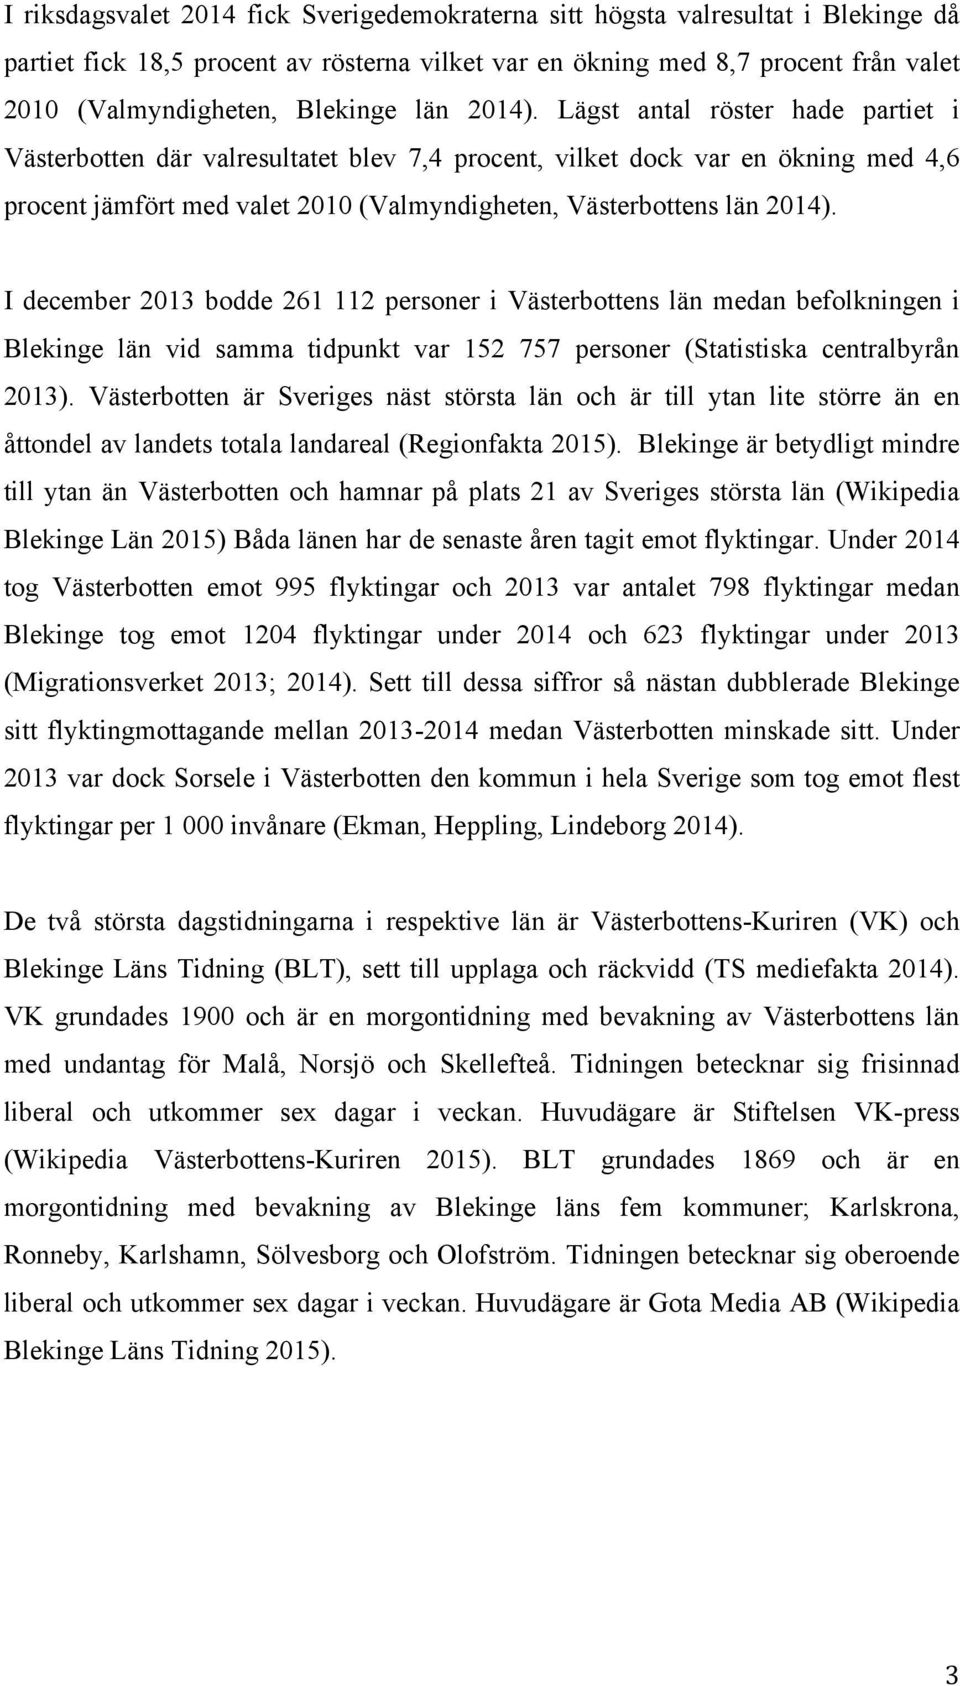 Lägst antal röster hade partiet i Västerbotten där valresultatet blev 7,4 procent, vilket dock var en ökning med 4,6 procent jämfört med valet 2010 (Valmyndigheten, Västerbottens län 2014).